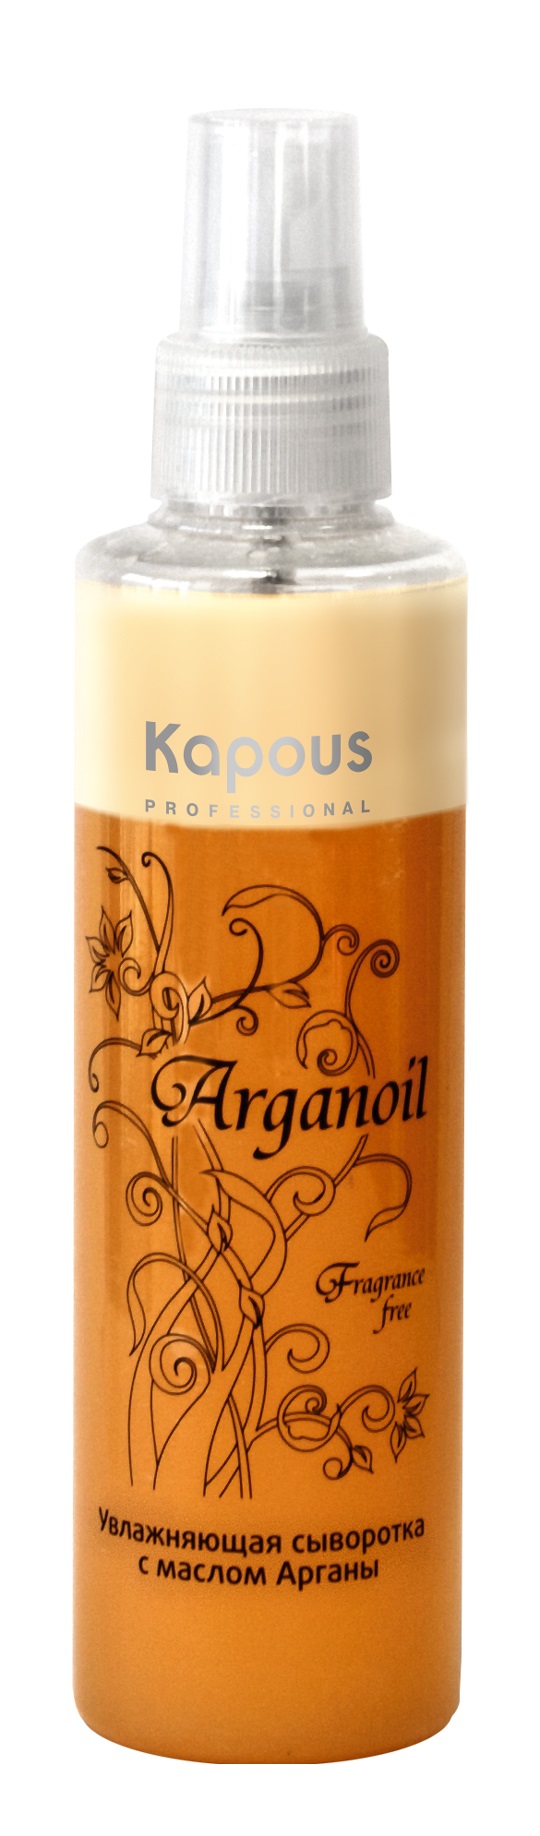 Увлажняющая сыворотка с маслом арганы Kapous Arganoil 200 мл.